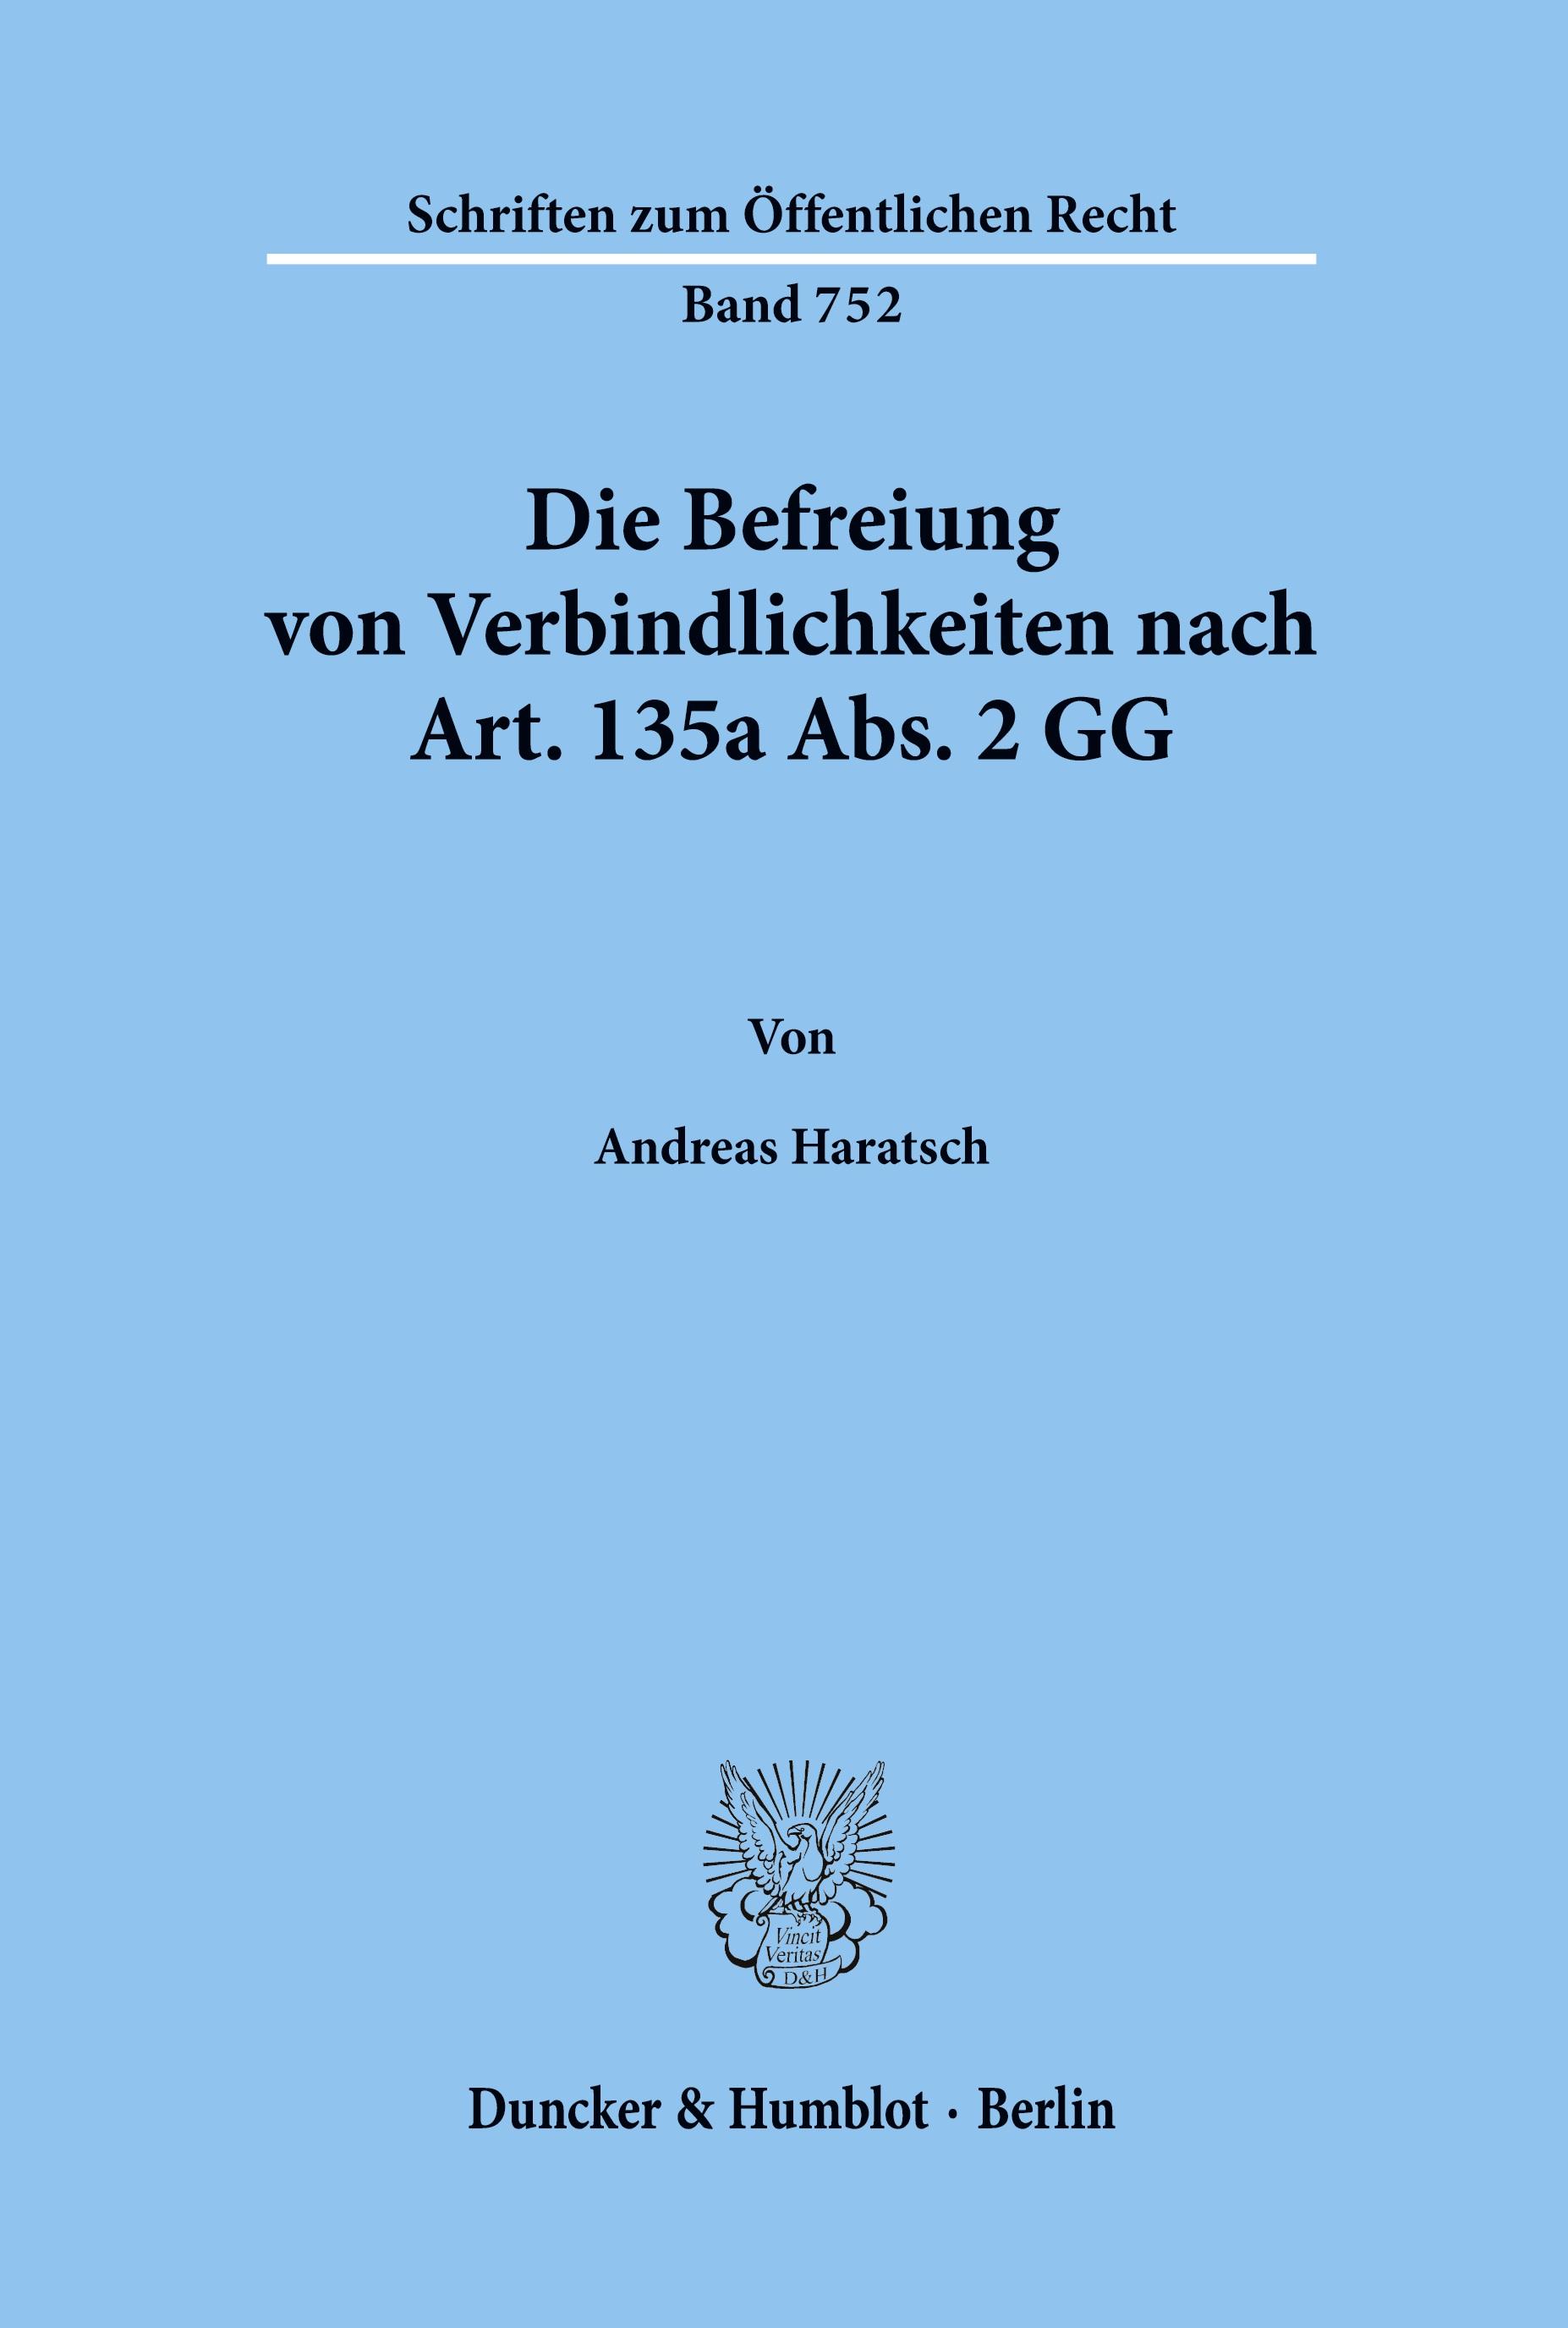 Die Befreiung von Verbindlichkeiten nach Art. 135a Abs. 2 GG. - Andreas Haratsch